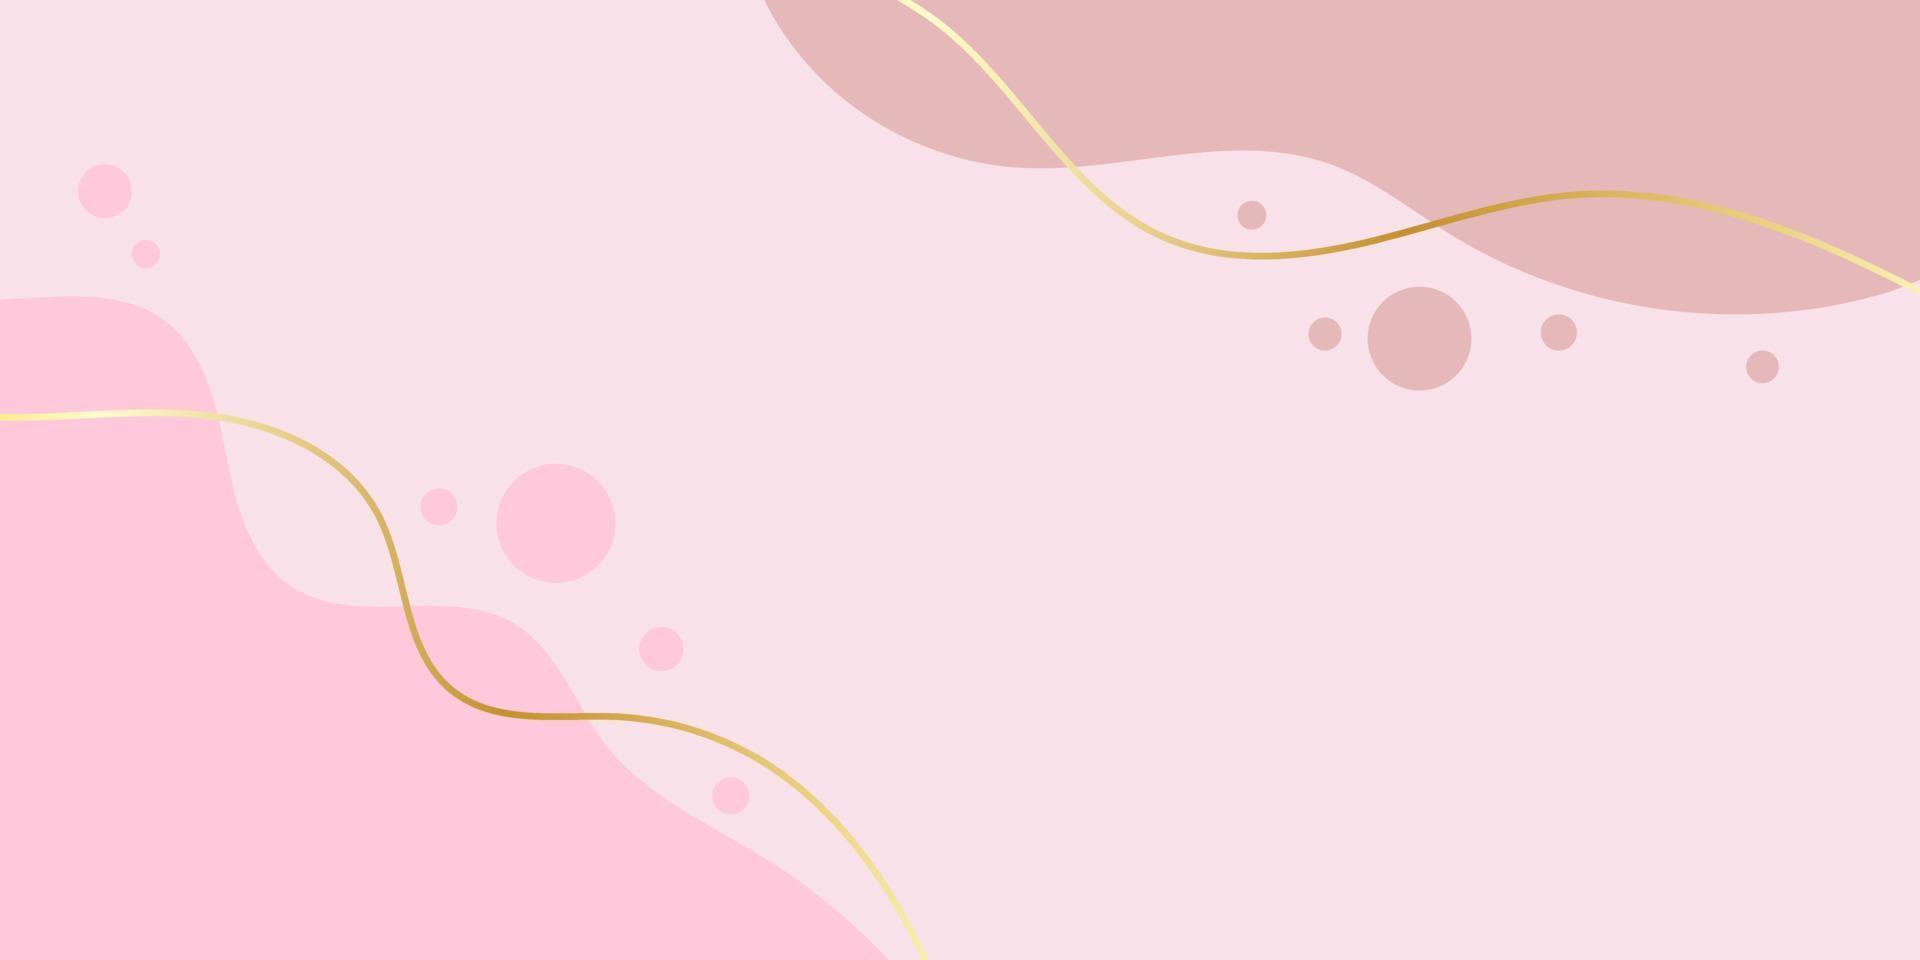 abstrait moderne. vague rose avec des lignes de dégradés d'or. bannière à la mode. illustration vectorielle. vecteur